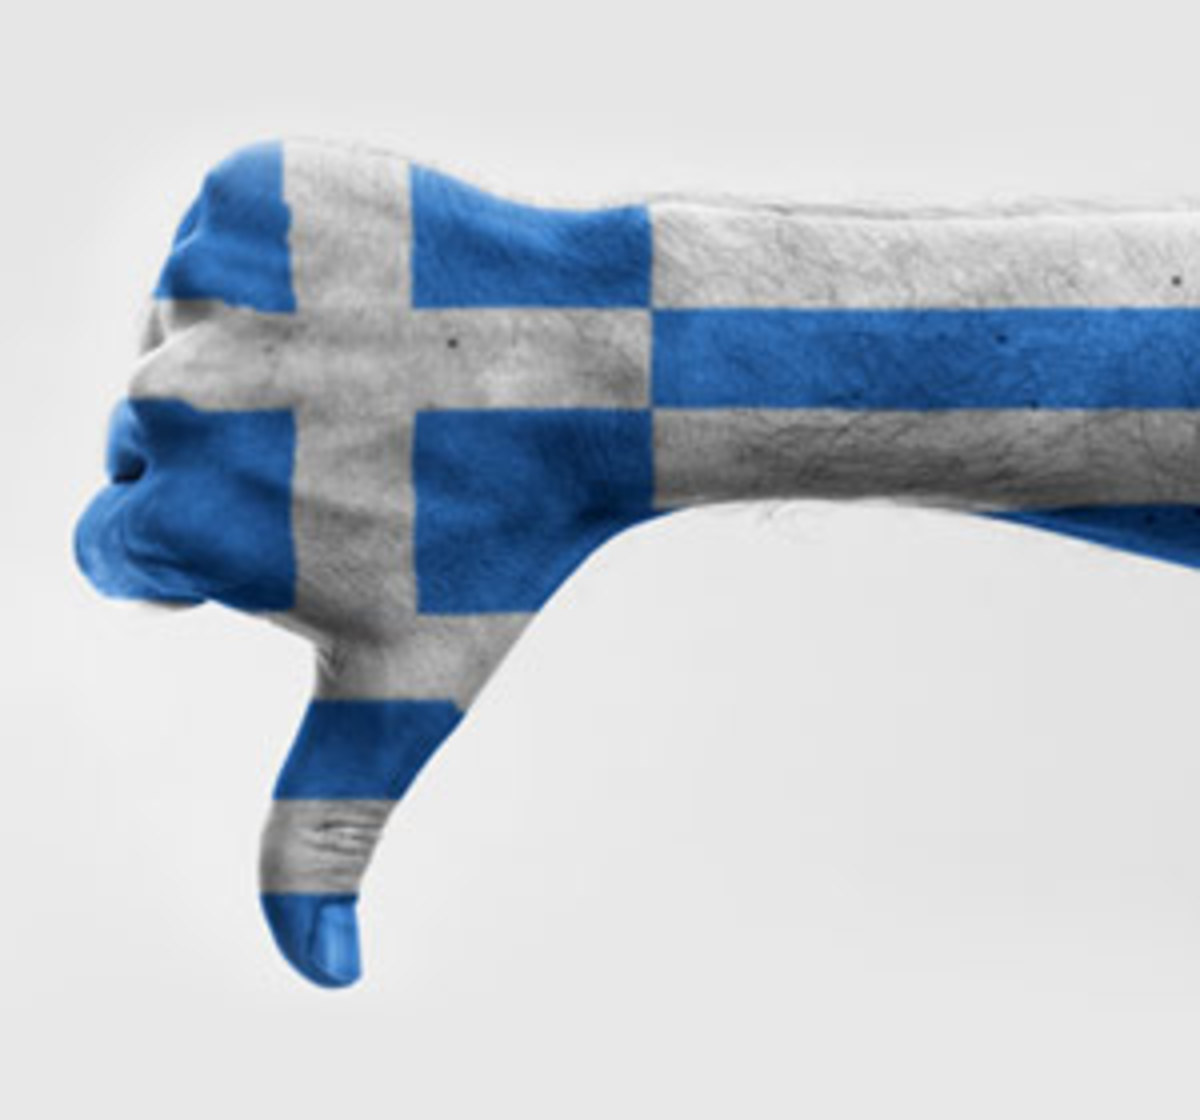 “Μπαλώματα” και “δειλή” χαρακτηρίζει η Λεζ Εκό τη συμφωνία για την Ελλάδα